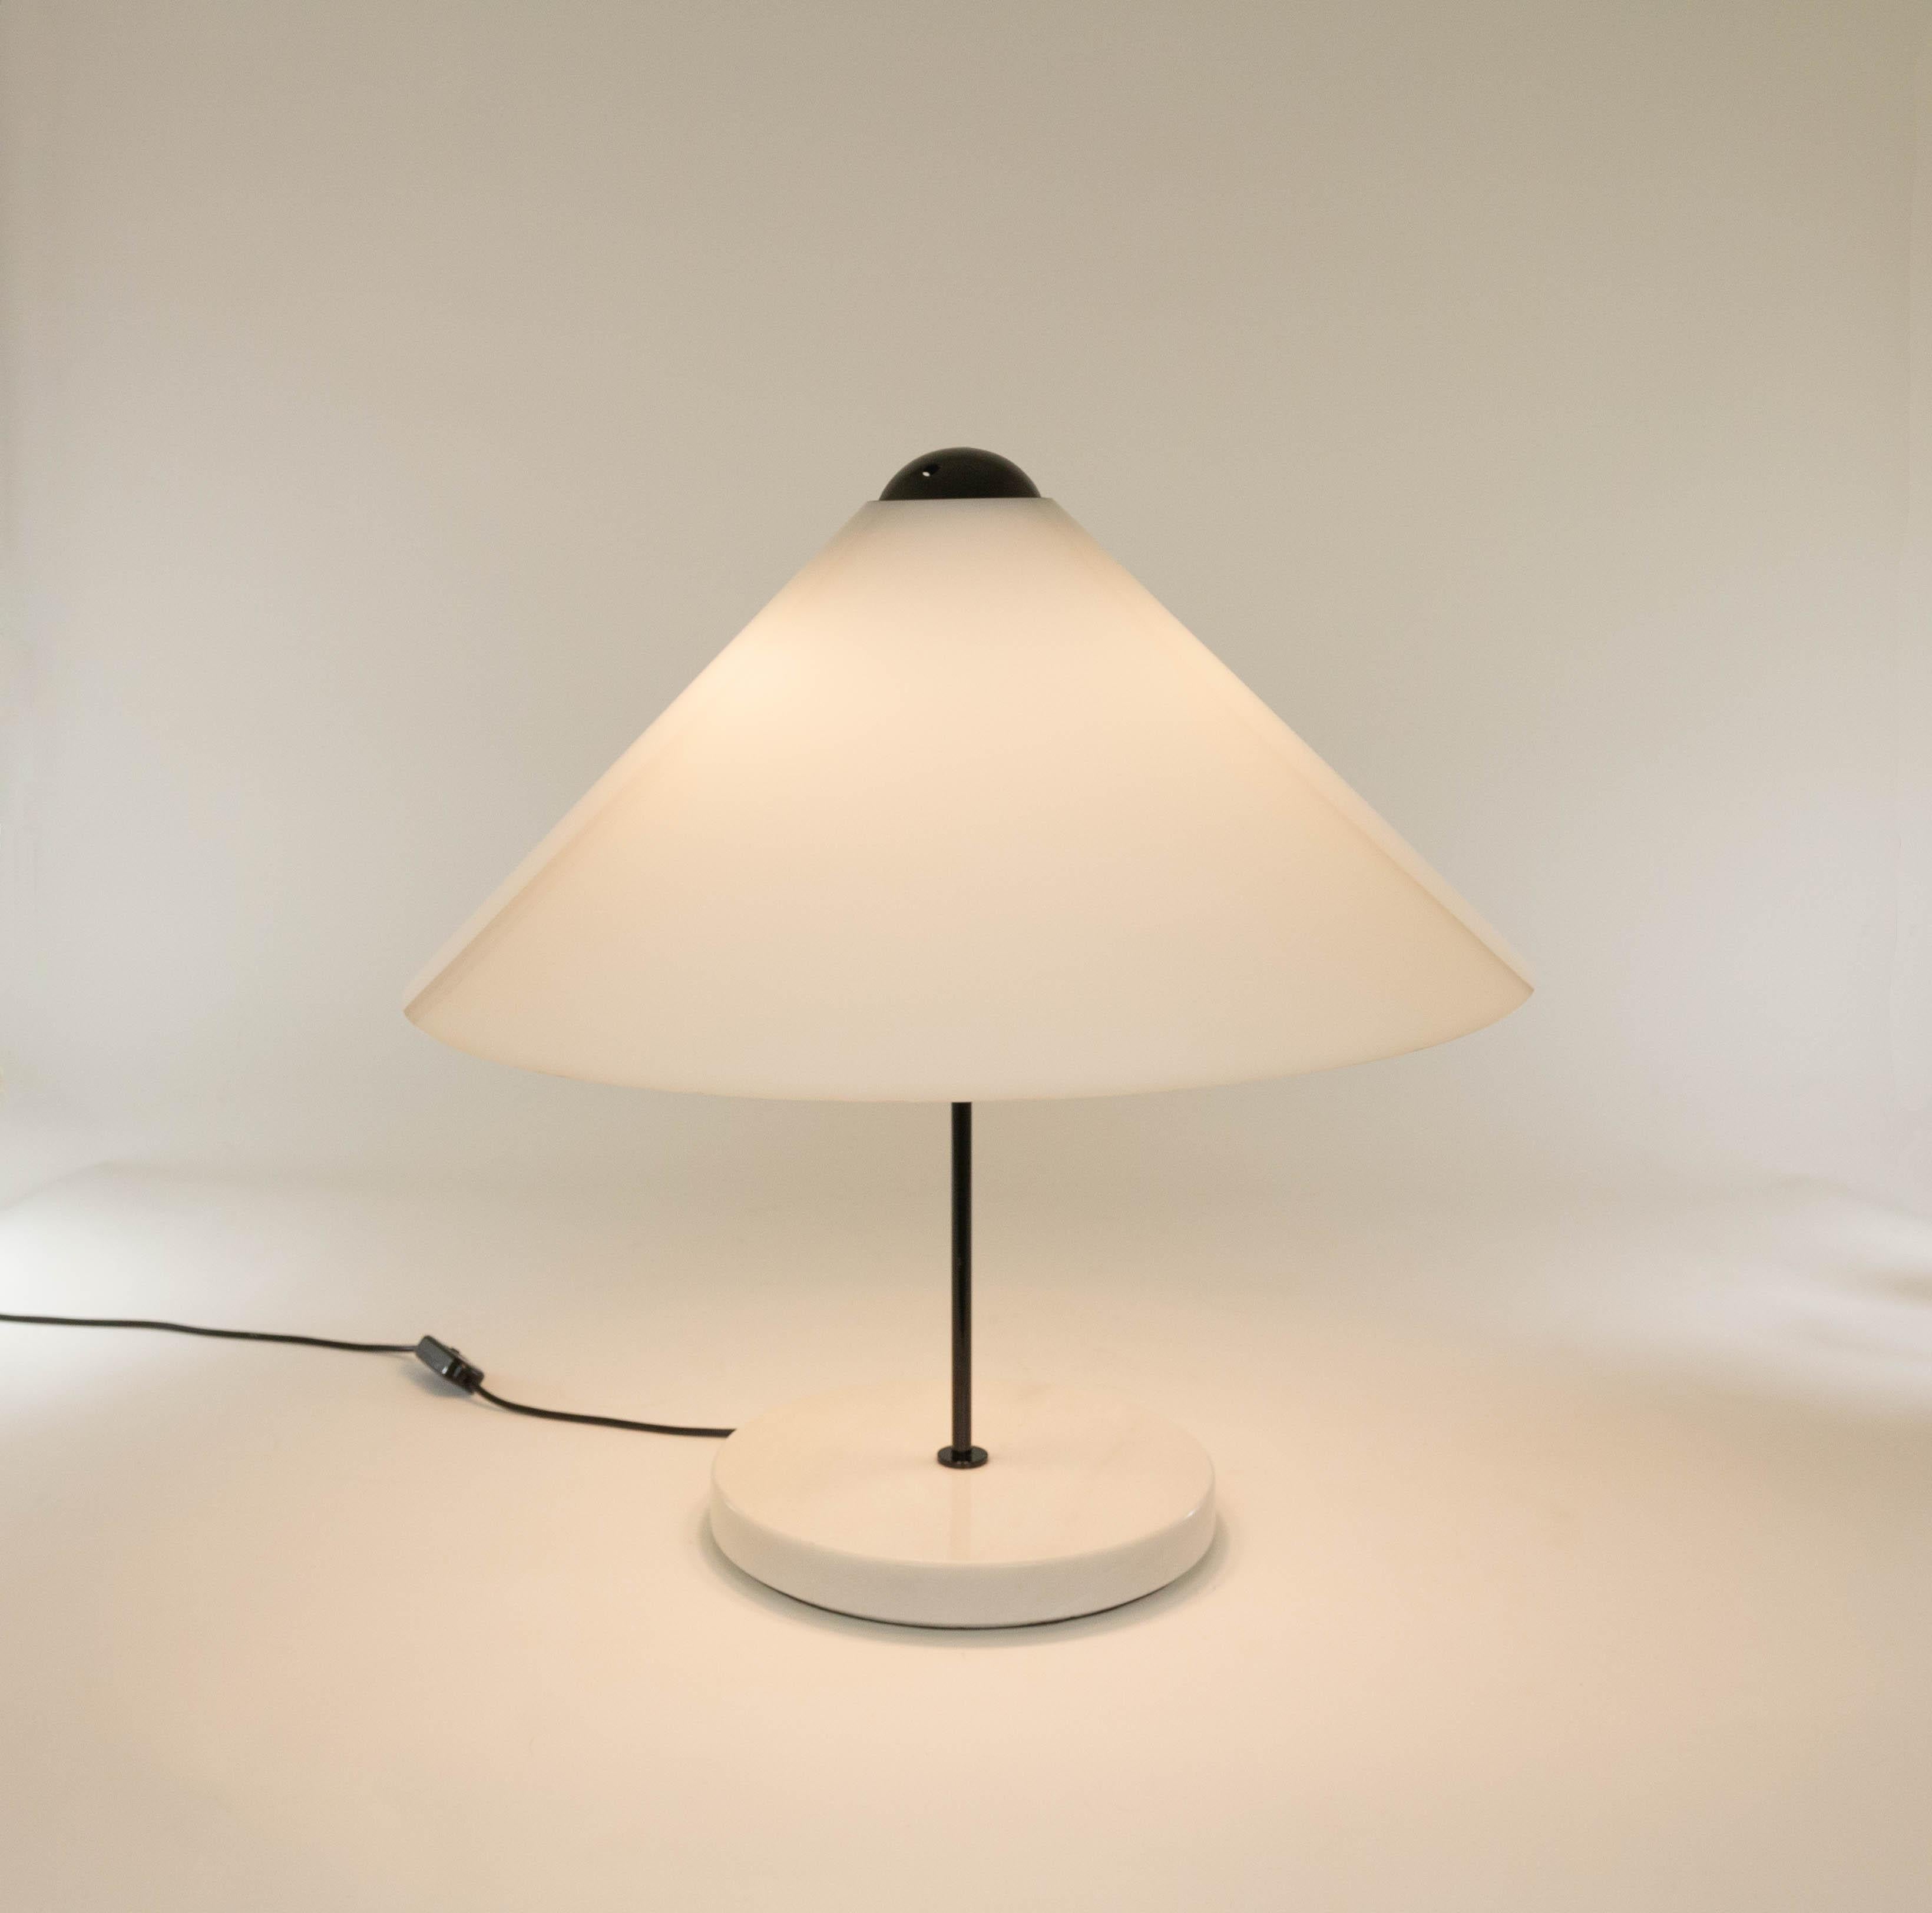 Grande lampe de table Snow 201 conçue par Vico Magistretti (en 1973) et fabriquée par O-Luce à partir de 1974.

La lampe de table présente une base cylindrique en marbre blanc, une tige laquée noire et un abat-jour en forme de cône en méthacrylate